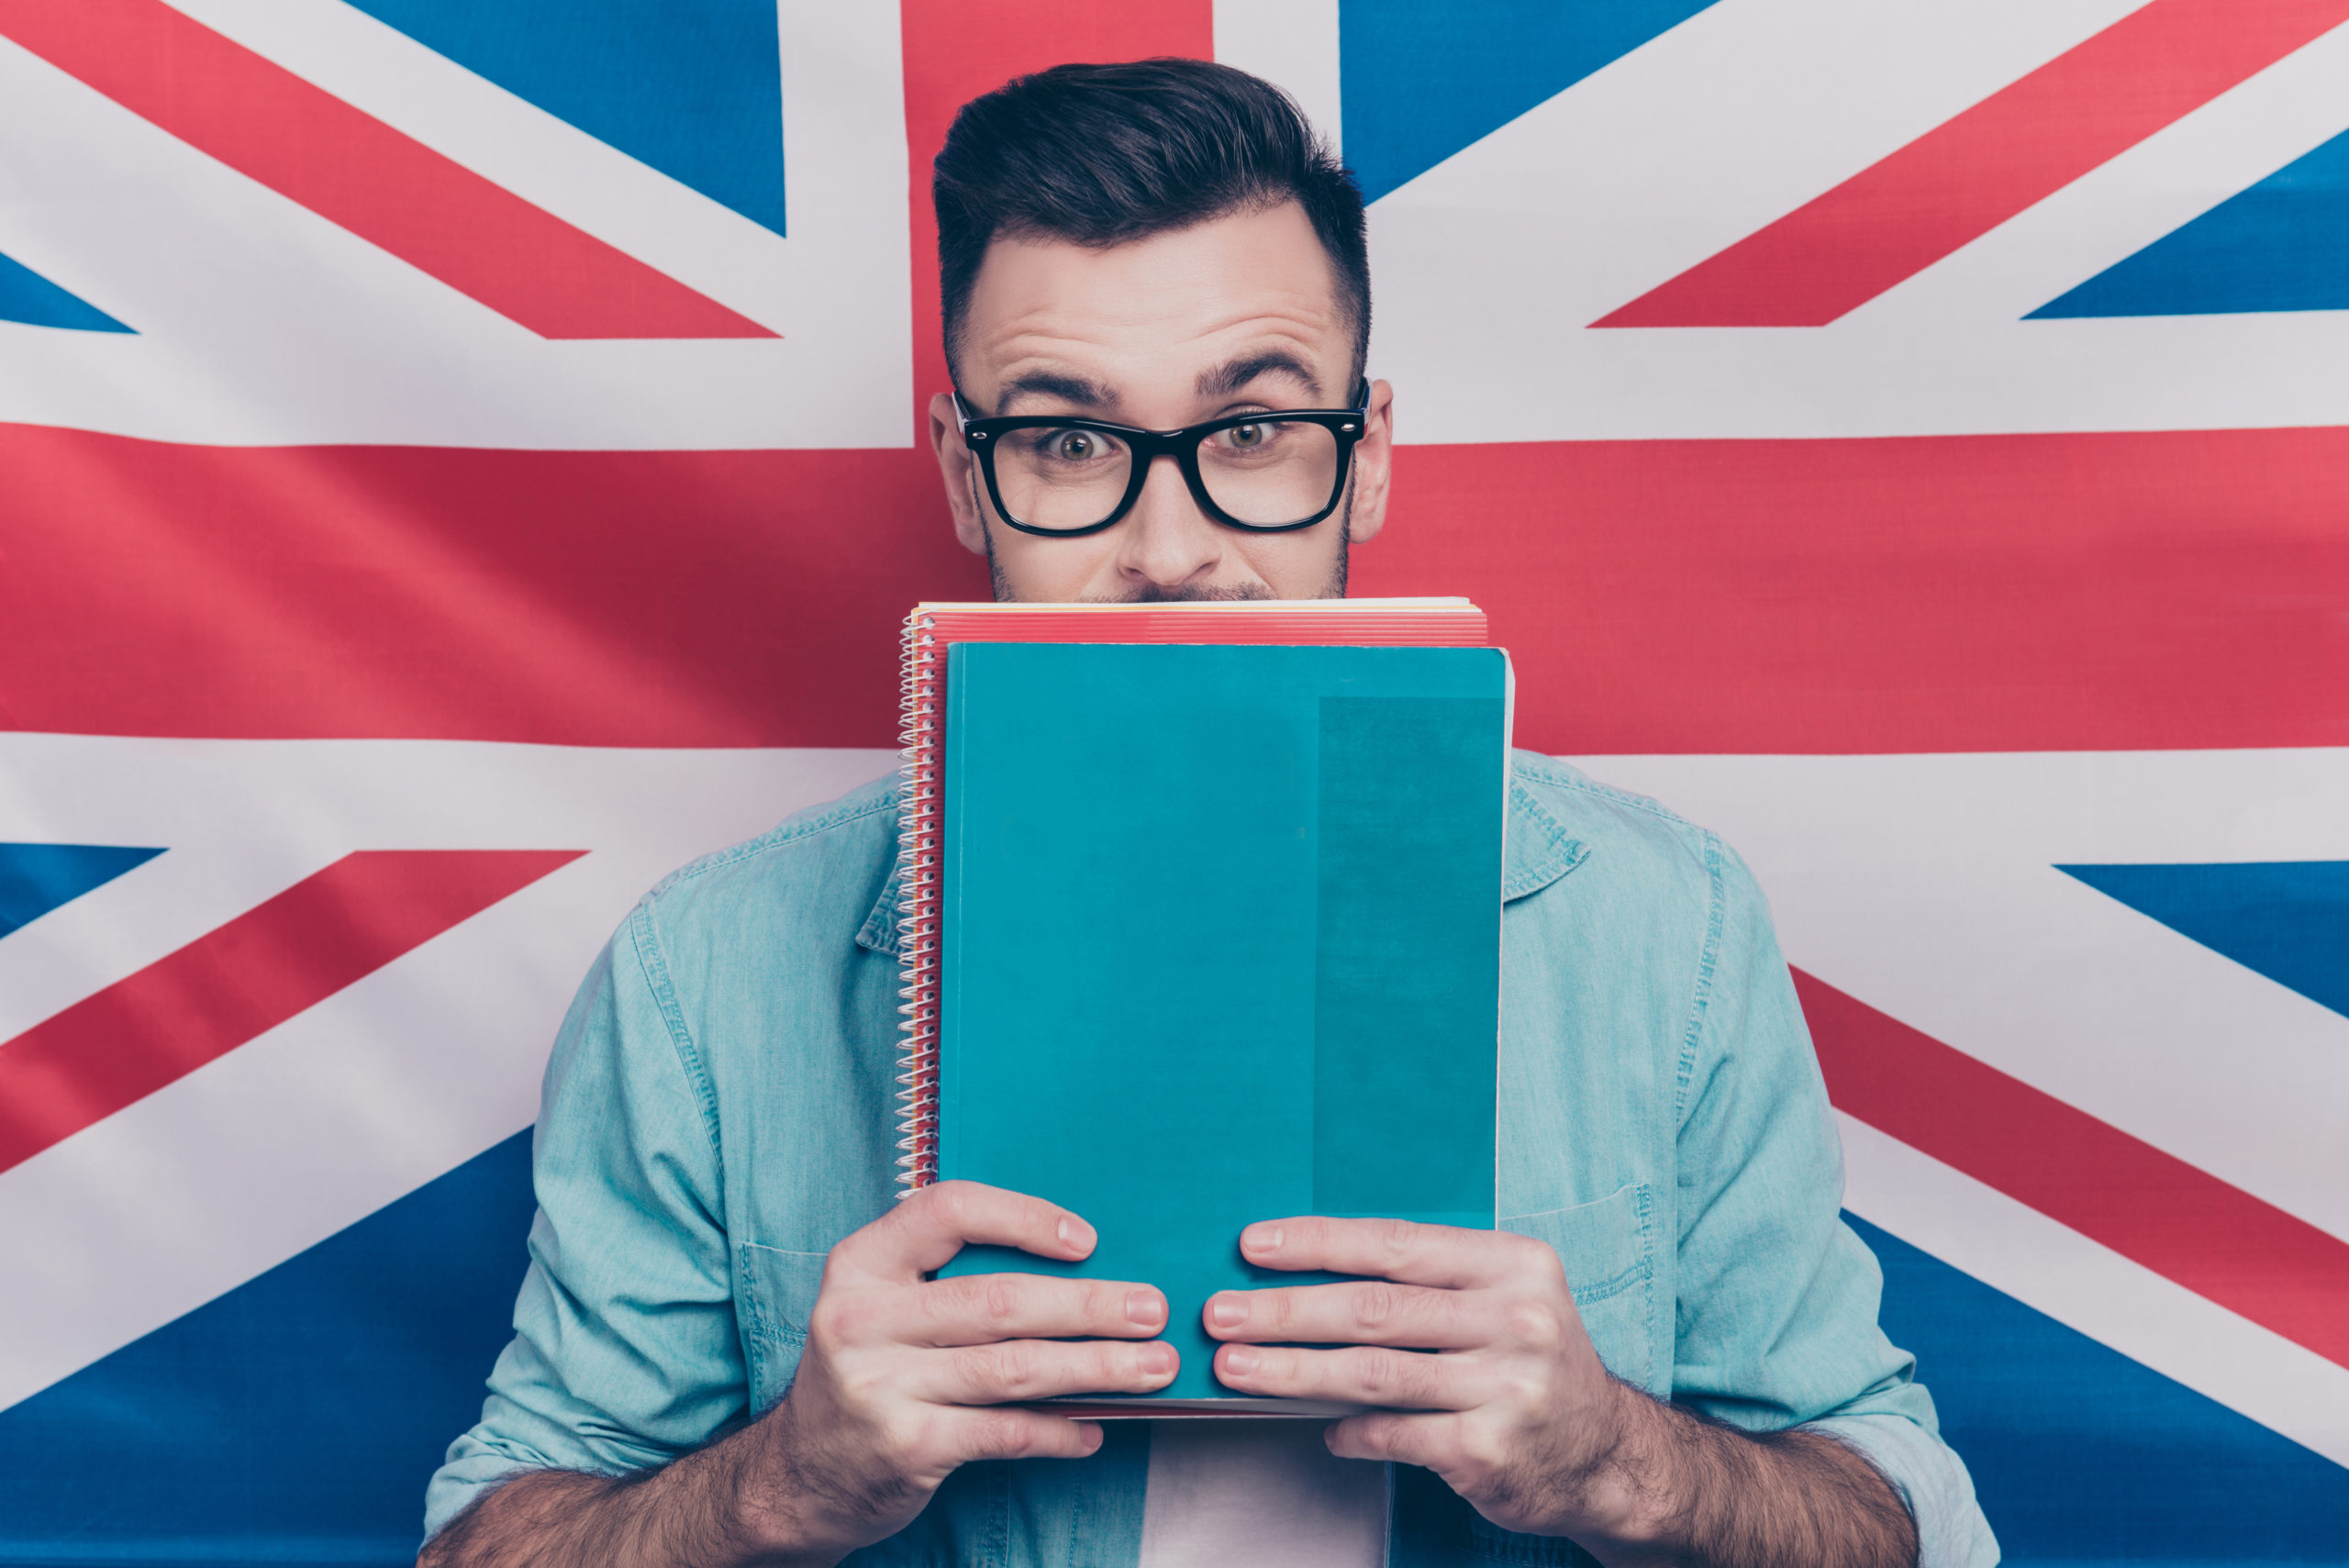 Exames de proficiência em inglês: o que é e quando buscar a certificação?